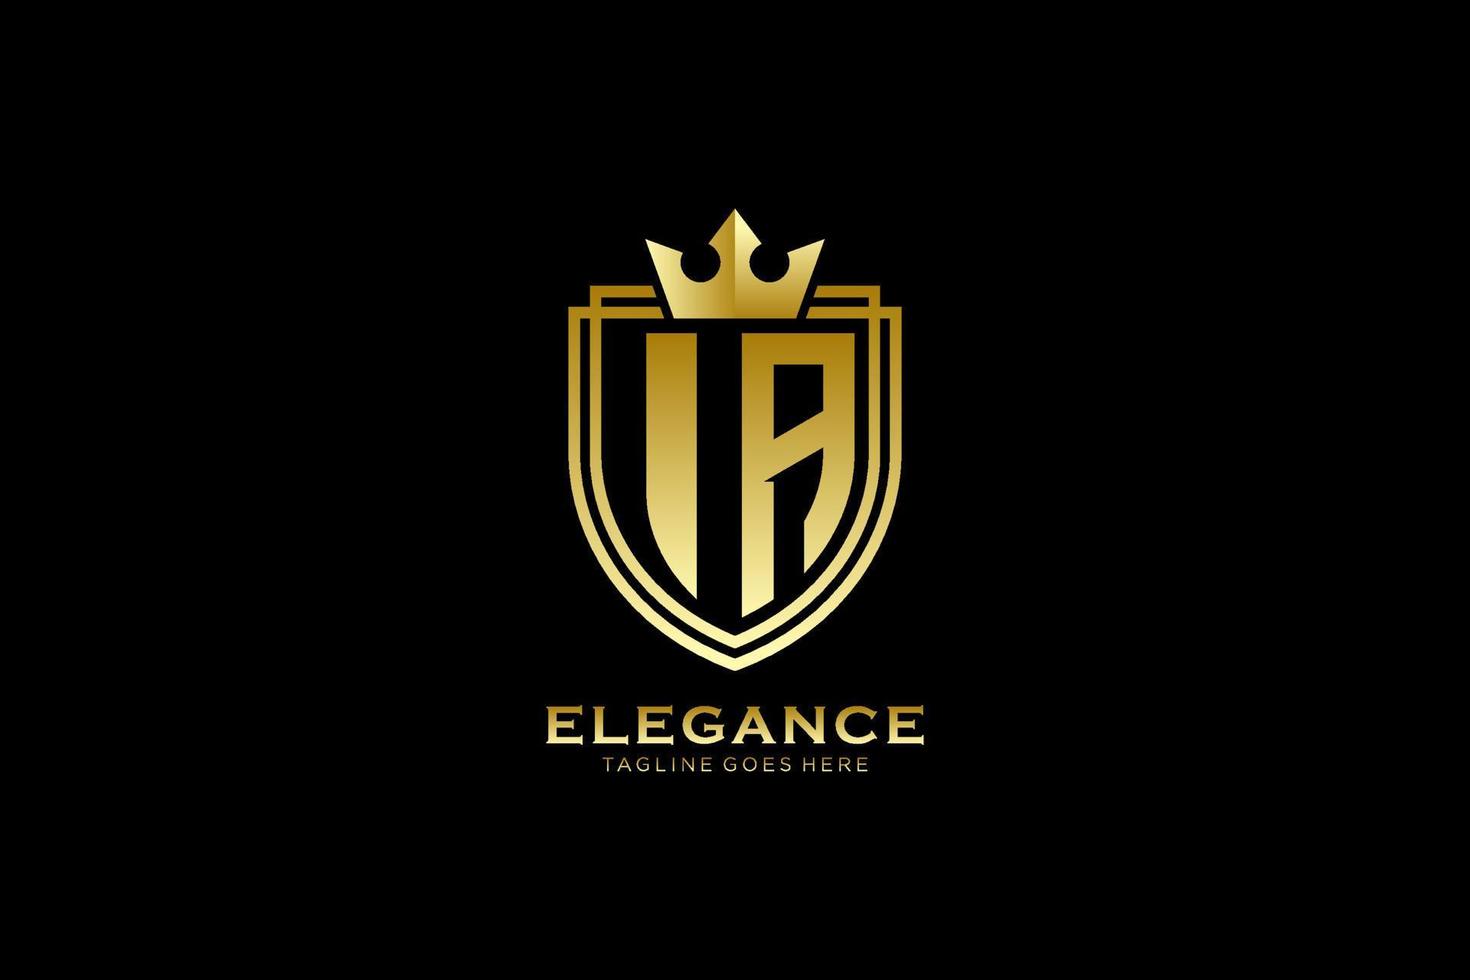 Initiale ist ein elegantes Luxus-Monogramm-Logo oder eine Abzeichen-Vorlage mit Schriftrollen und königlicher Krone – perfekt für luxuriöse Branding-Projekte vektor